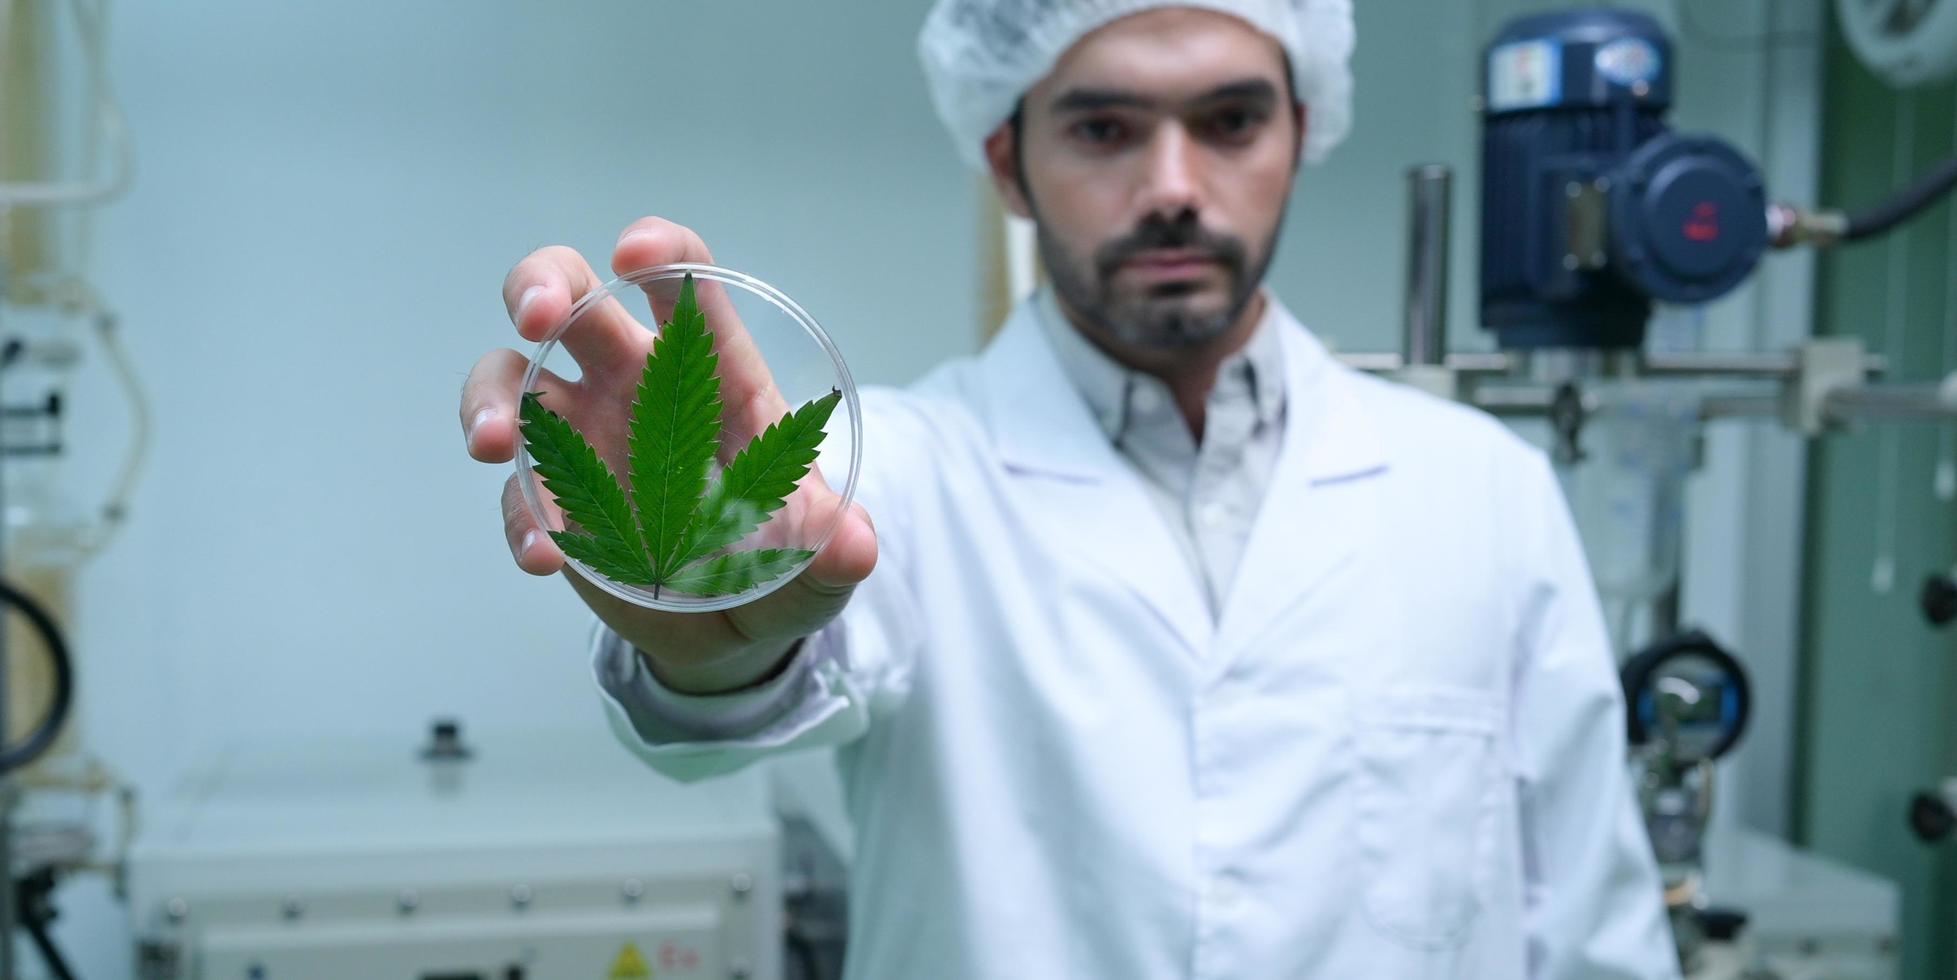 cientistas estão na câmara extraindo óleo e sementes de cannabis. mostrando folhas de chá usadas em pesquisa e desenvolvimento. foto